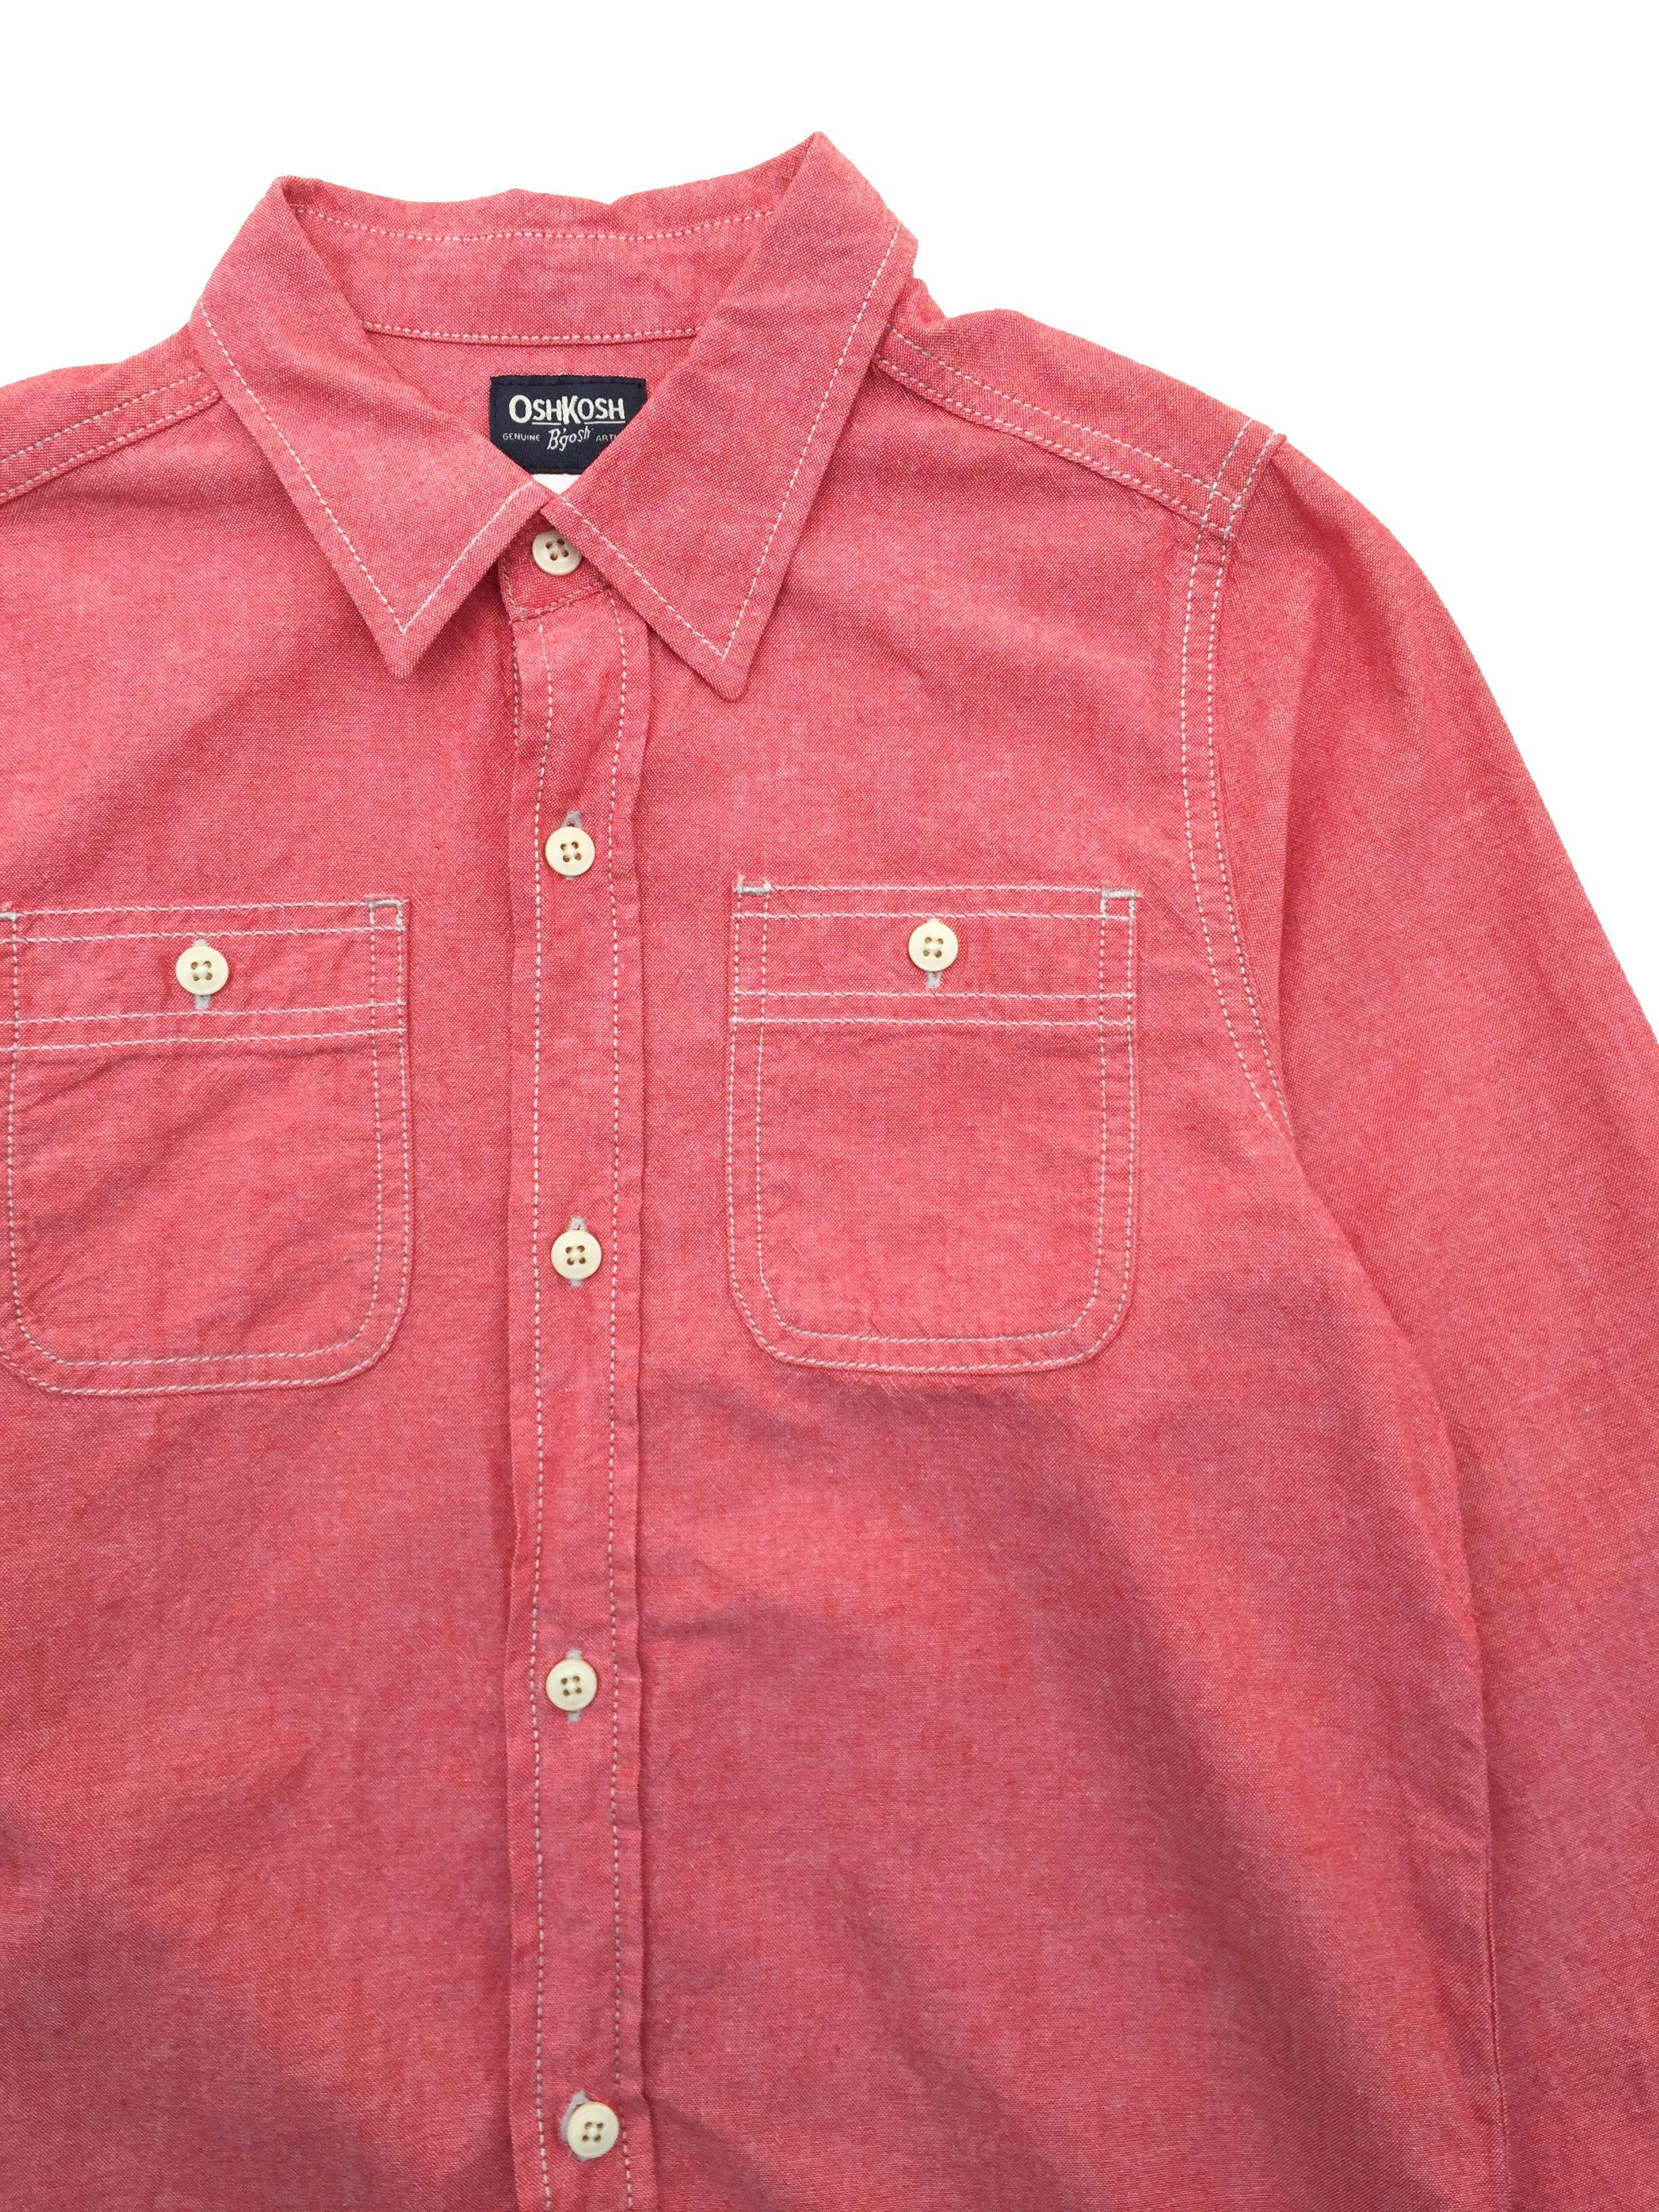 Camisa roja jaspeada con pespuntes crema y bolsillos en pecho